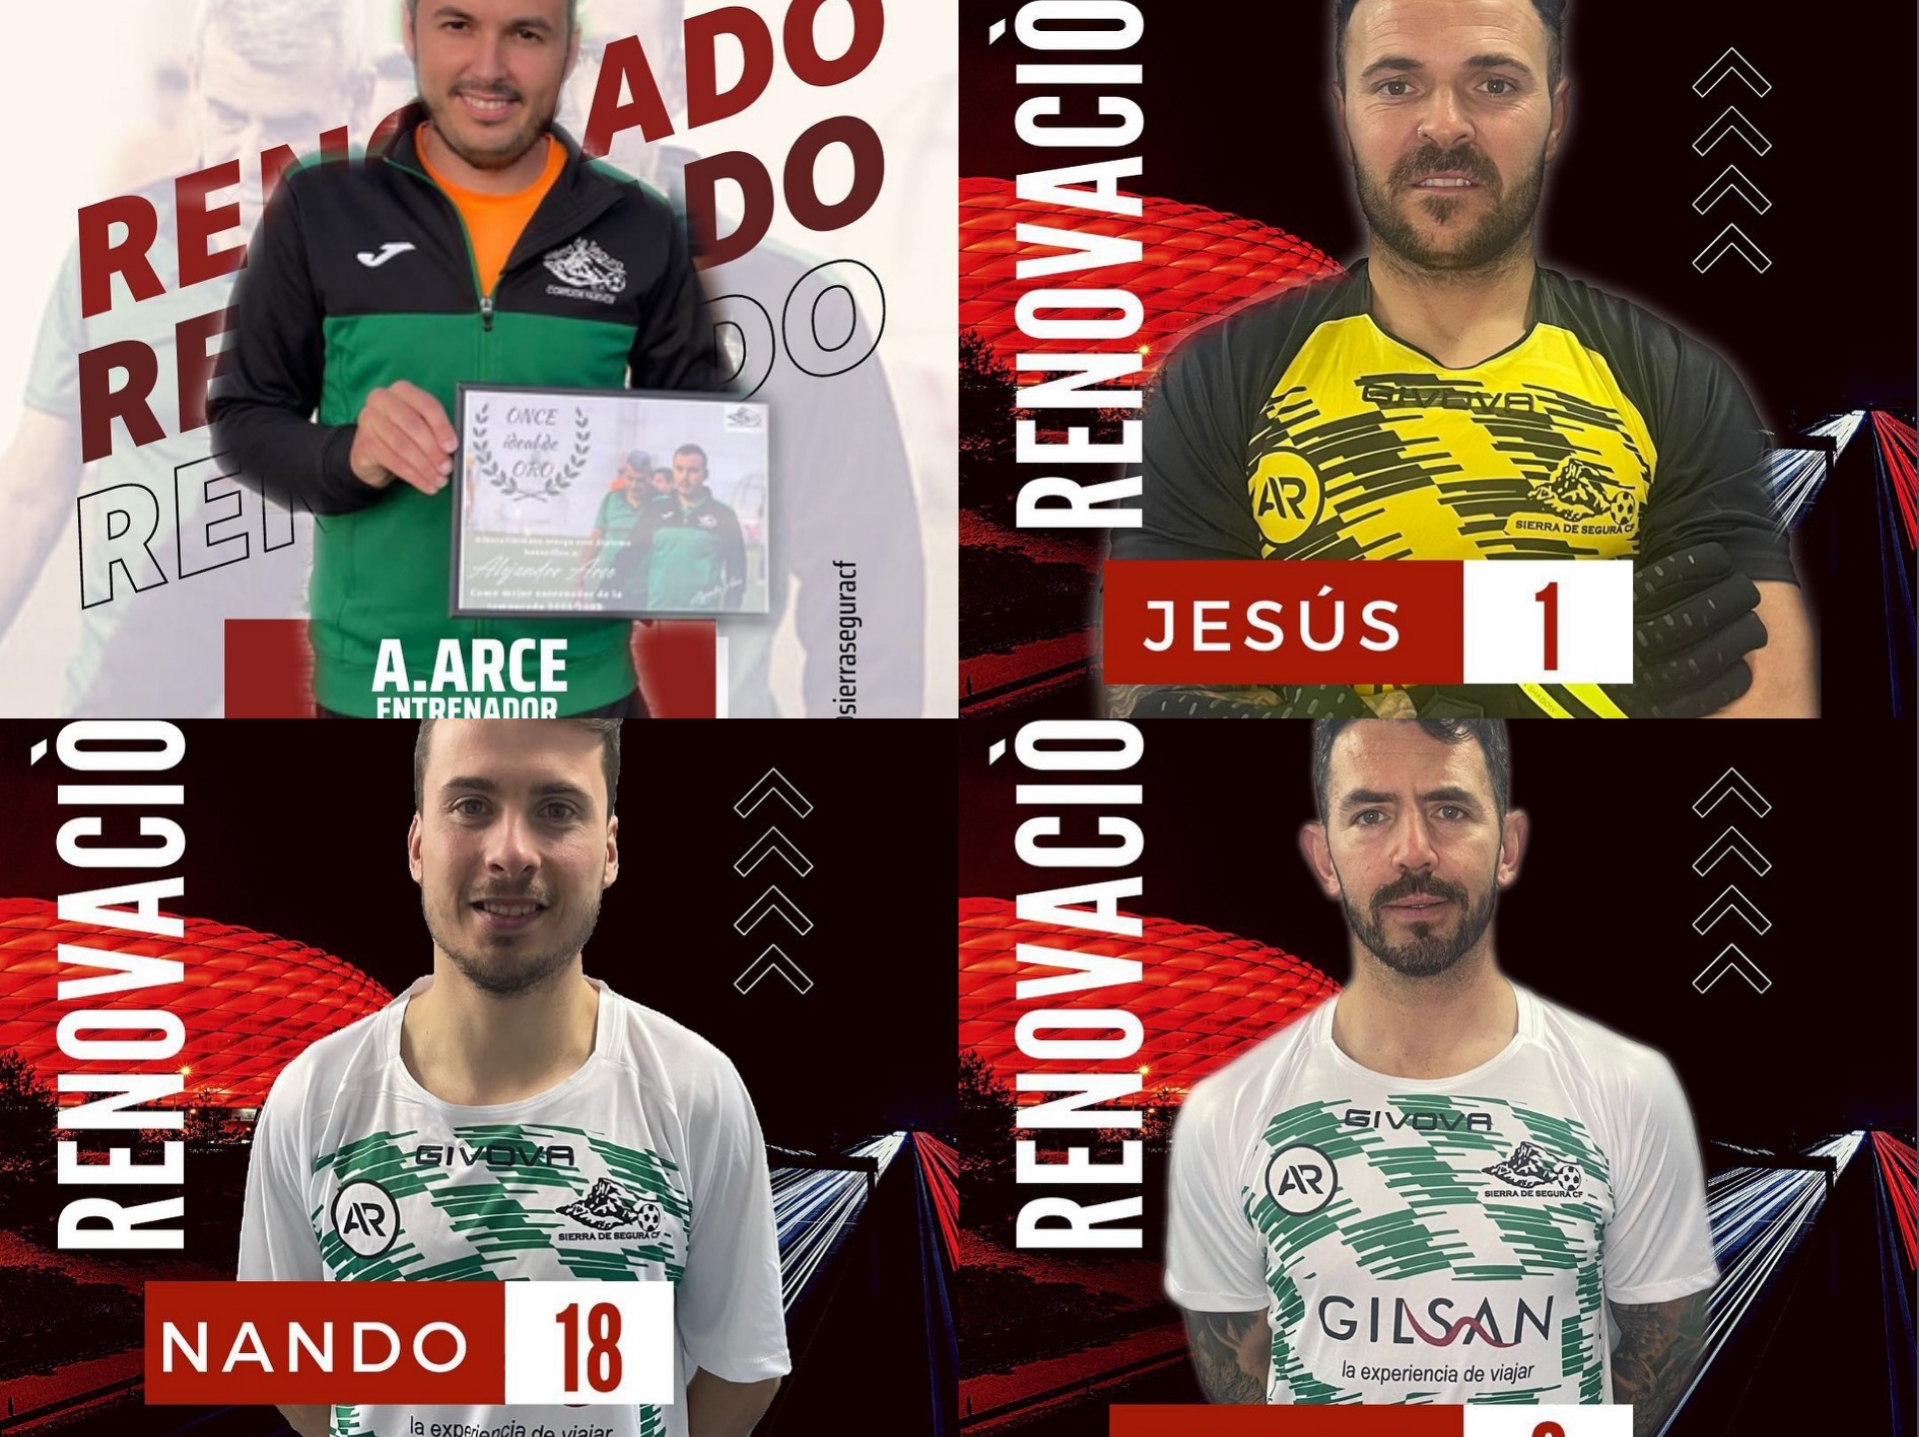 El entrenador Alejandro Arce y los jugadores Jesús Ruíz, Nando y Óscar Mañas primeras renovaciones del Sierra Segura CF